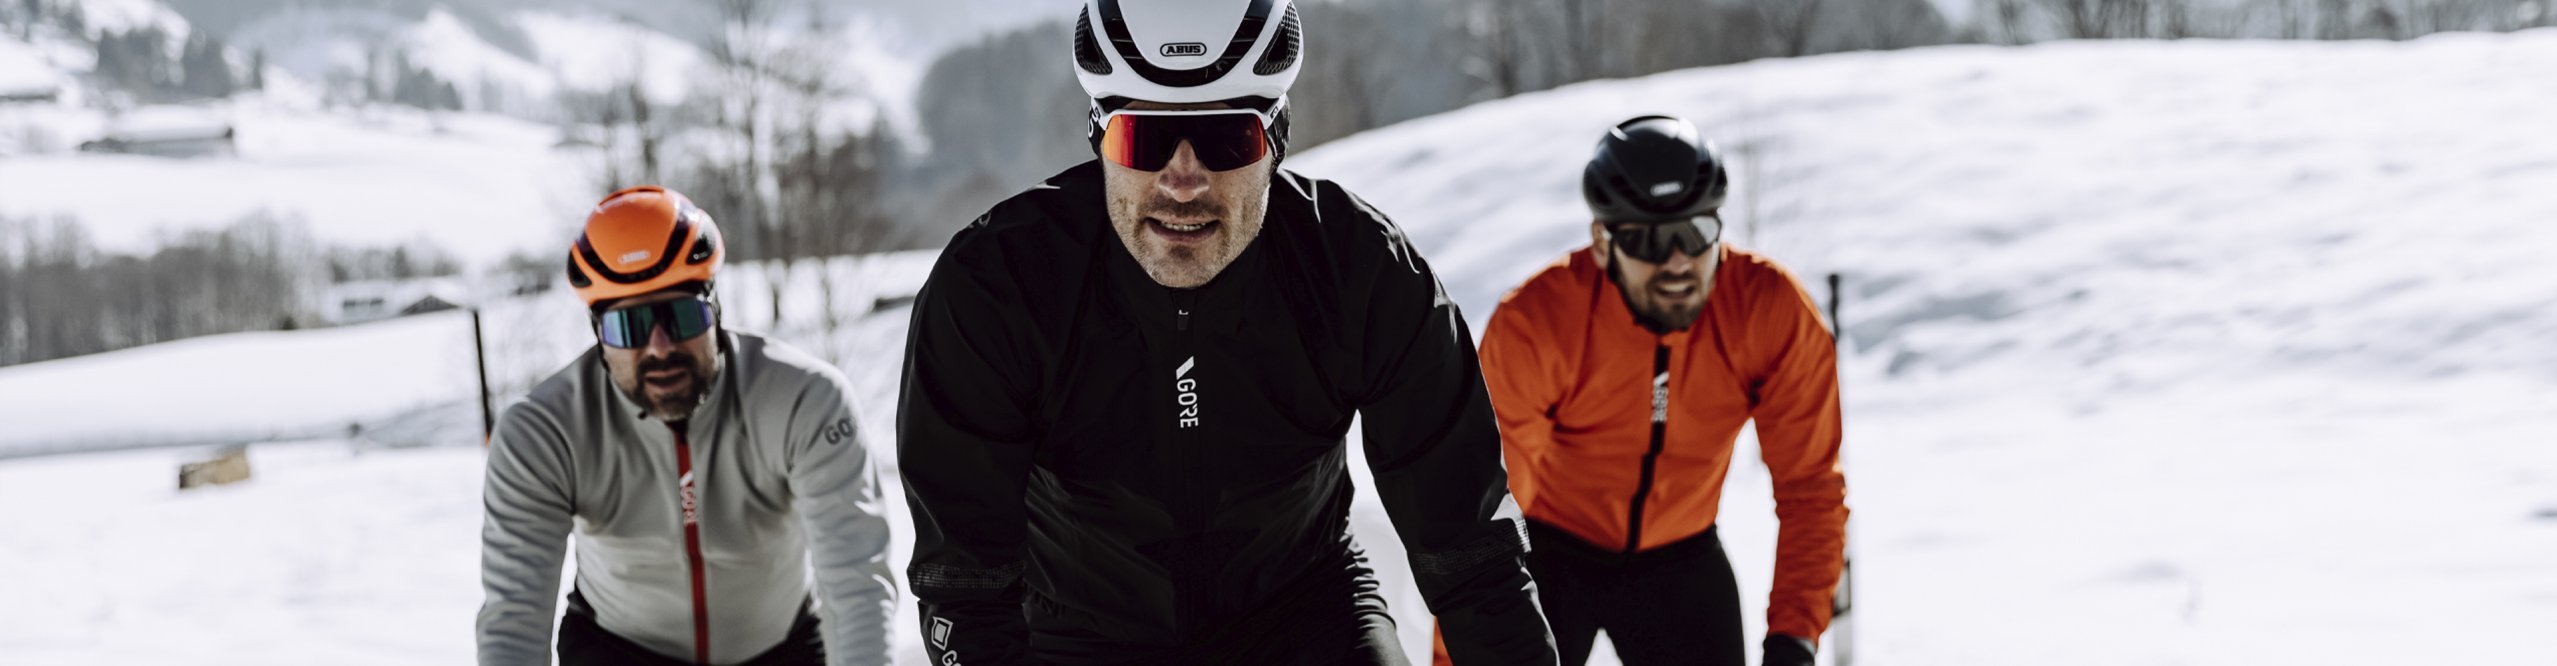 Drei Rennradfahrer fahren durch den Schnee